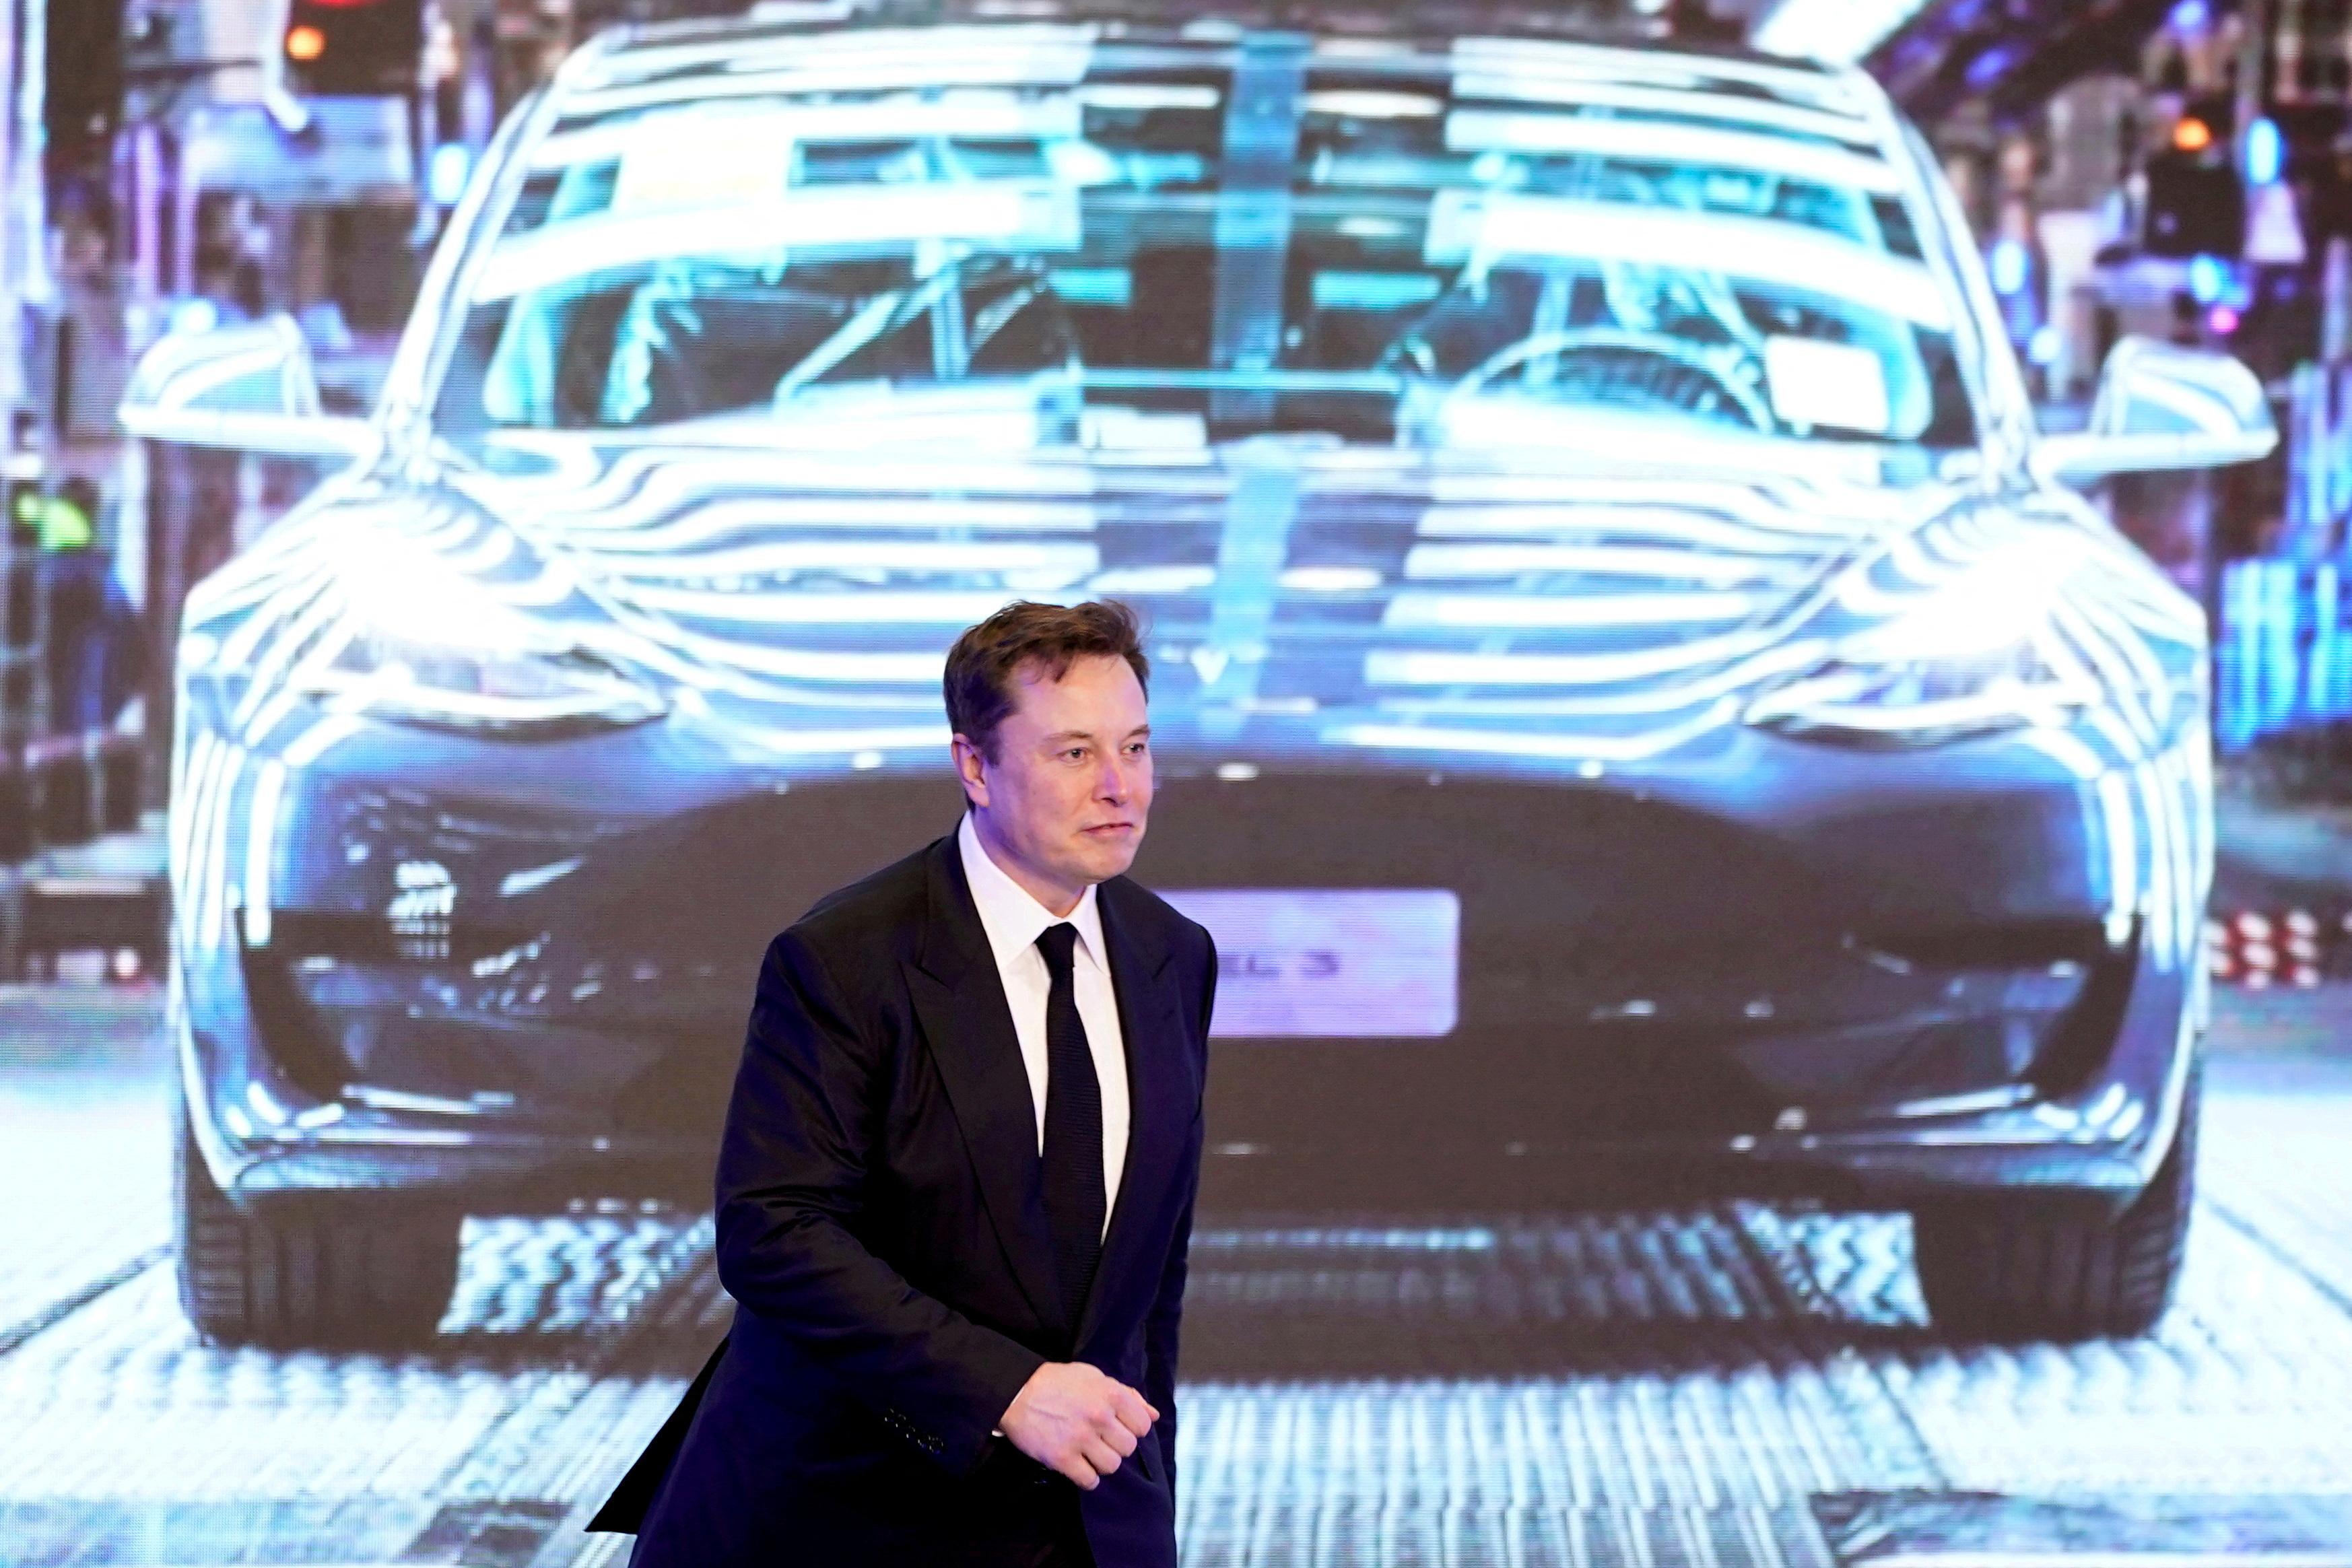 Tesla : Pour Elon Musk, la Model Y sera la voiture la plus vendue au monde  en 2023